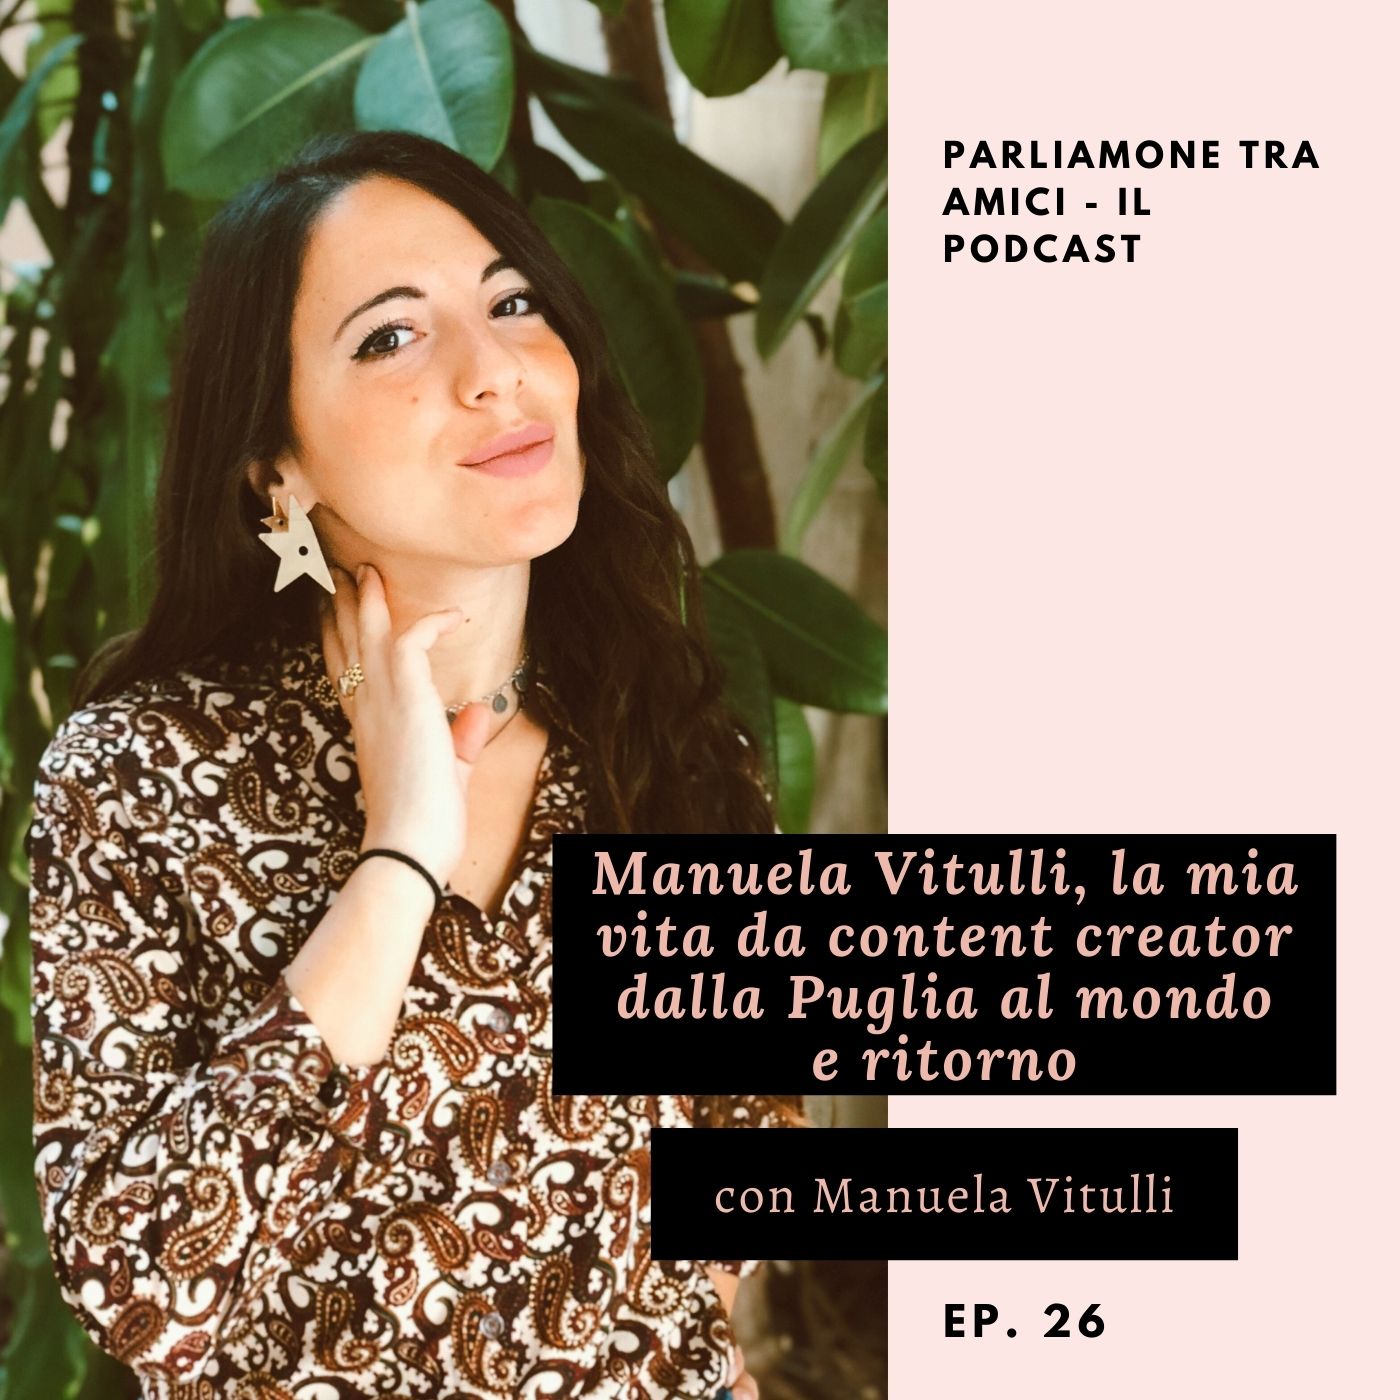 Manuela Vitulli, la mia vita da content creator dalla Puglia al mondo e ritorno – ep. 26